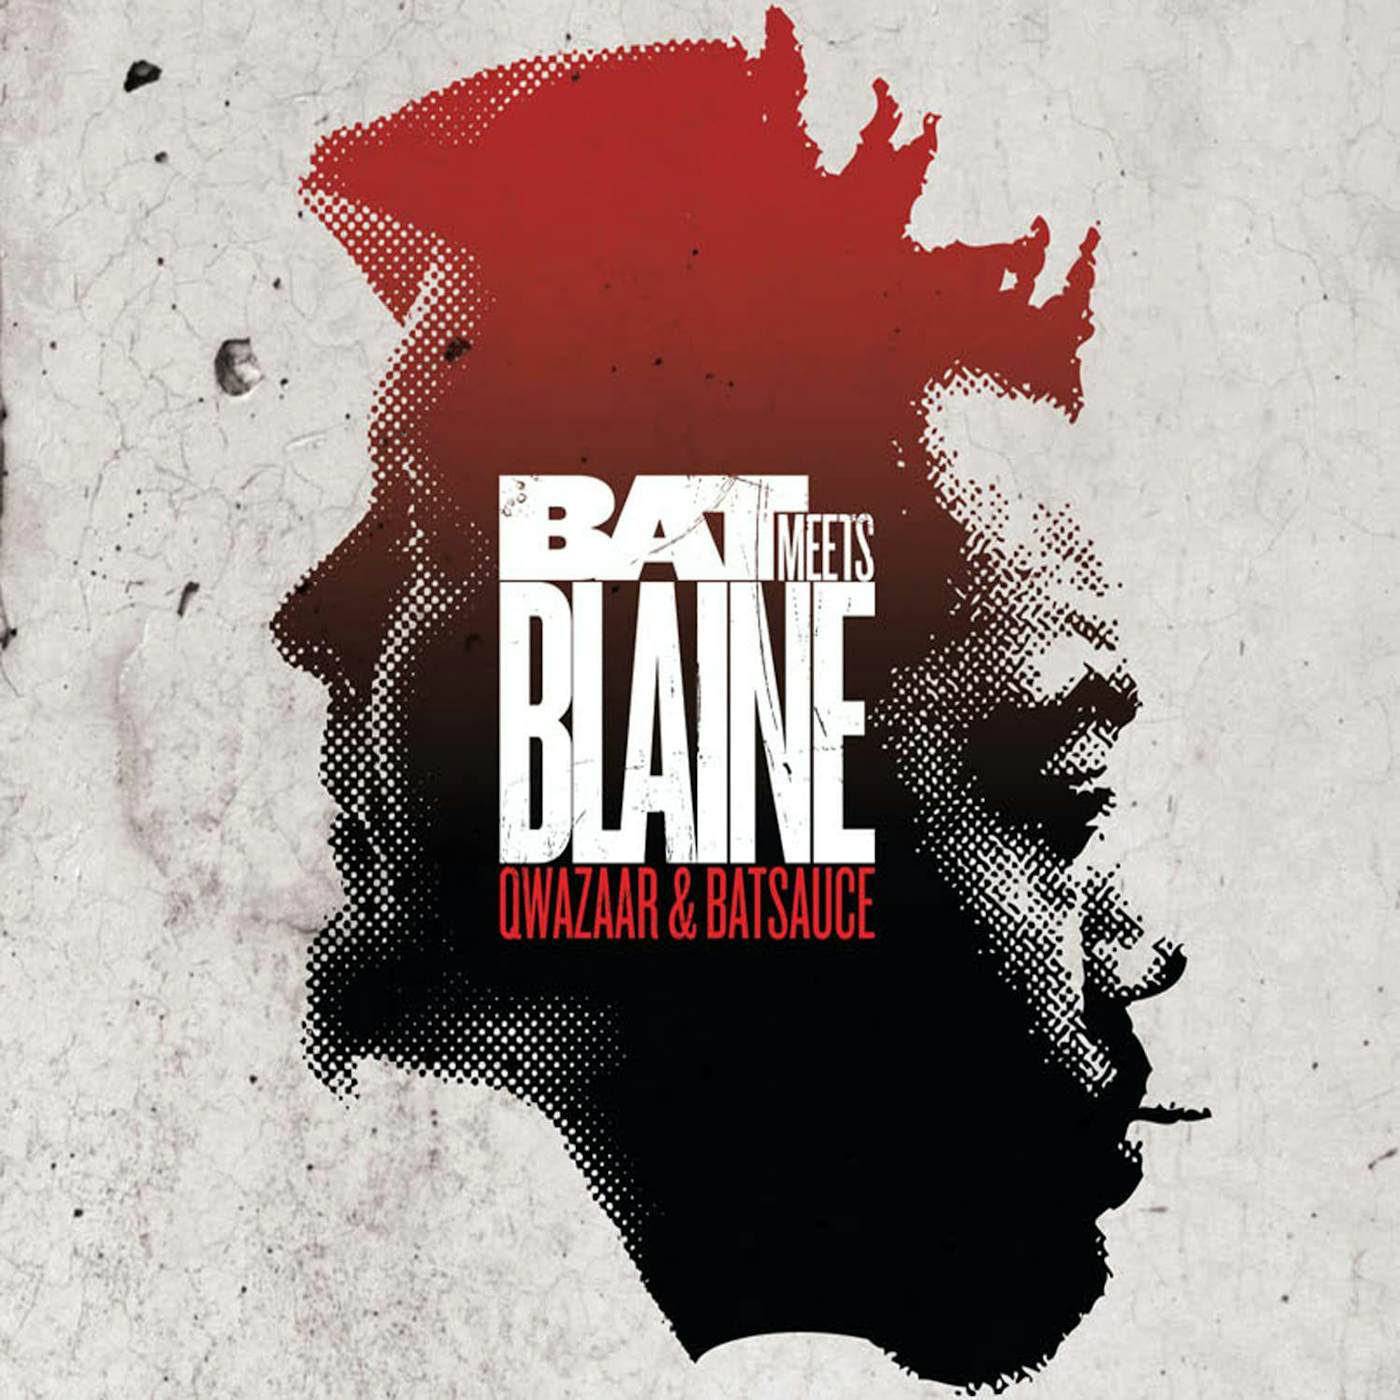 Qwazaar, Batsauce Bat Meets Blaine (10th Anniversary Edition) (Red Meets Black) Vinyl Record